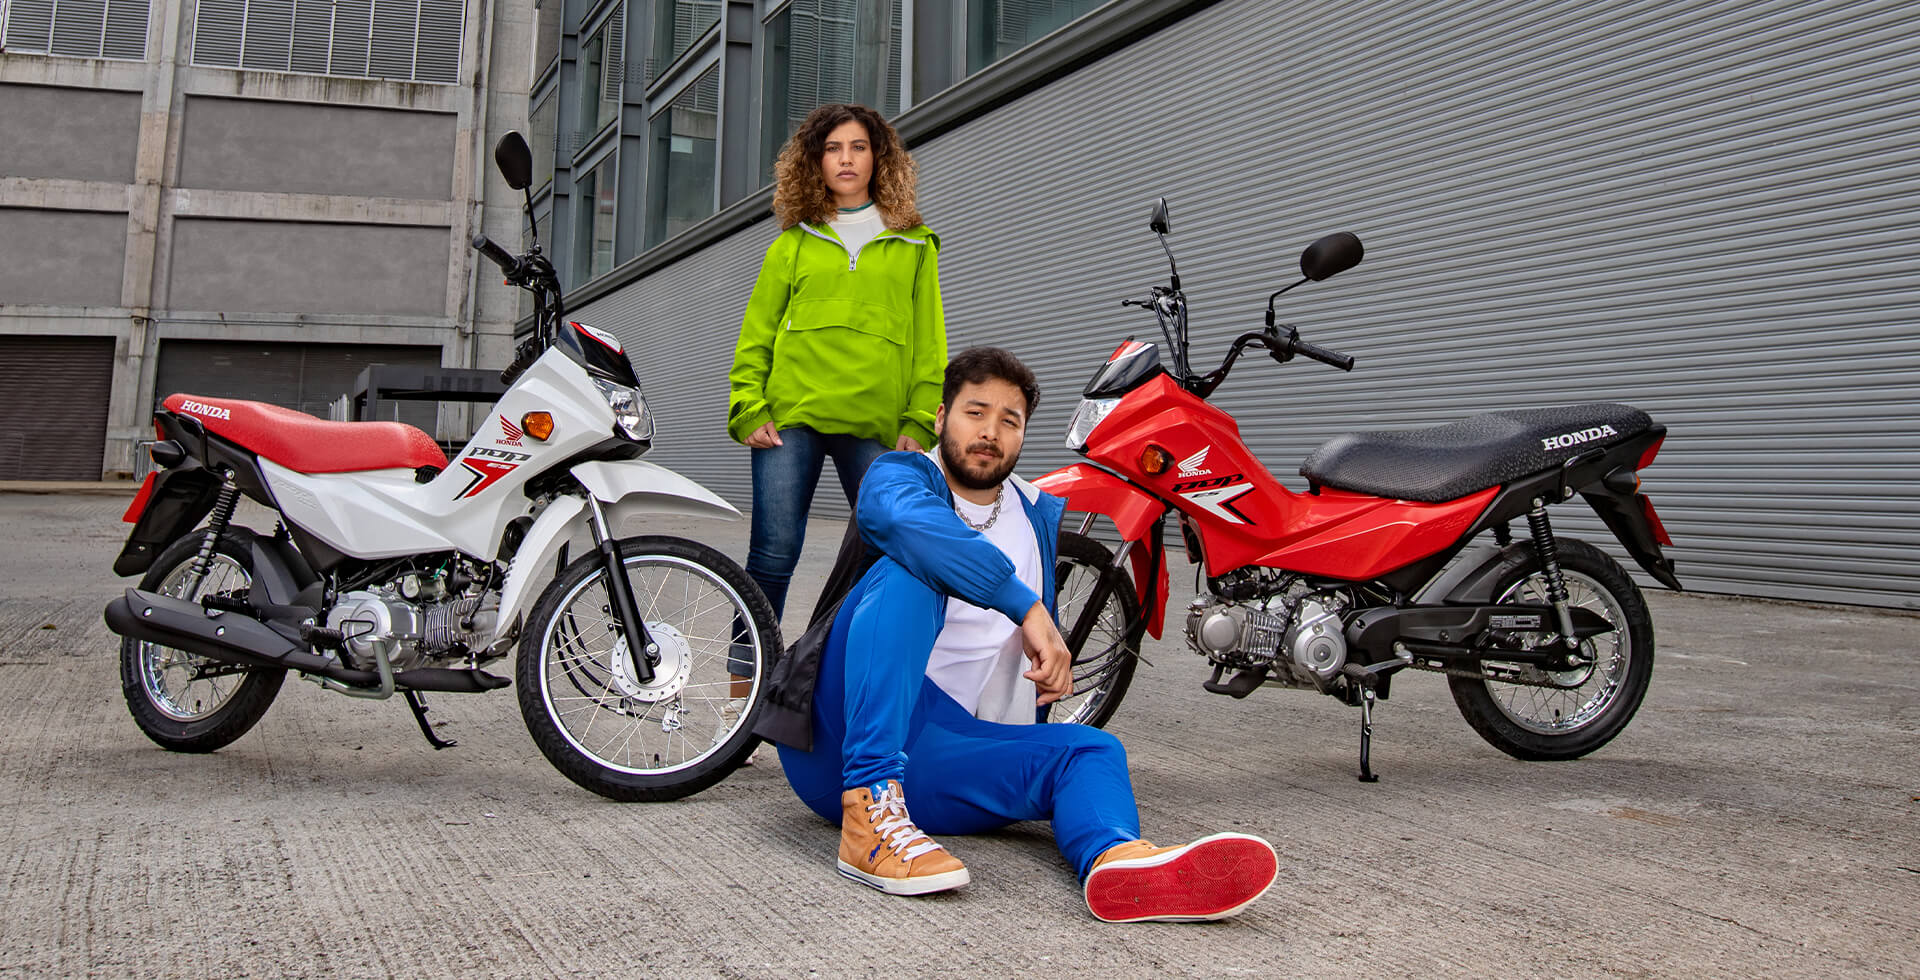 Casal em cenário urbano fazendo pose para foto e entre as motocicletas Honda Pop 1101 ES nas cores Branco Ross White e Vermelho Maceio Red